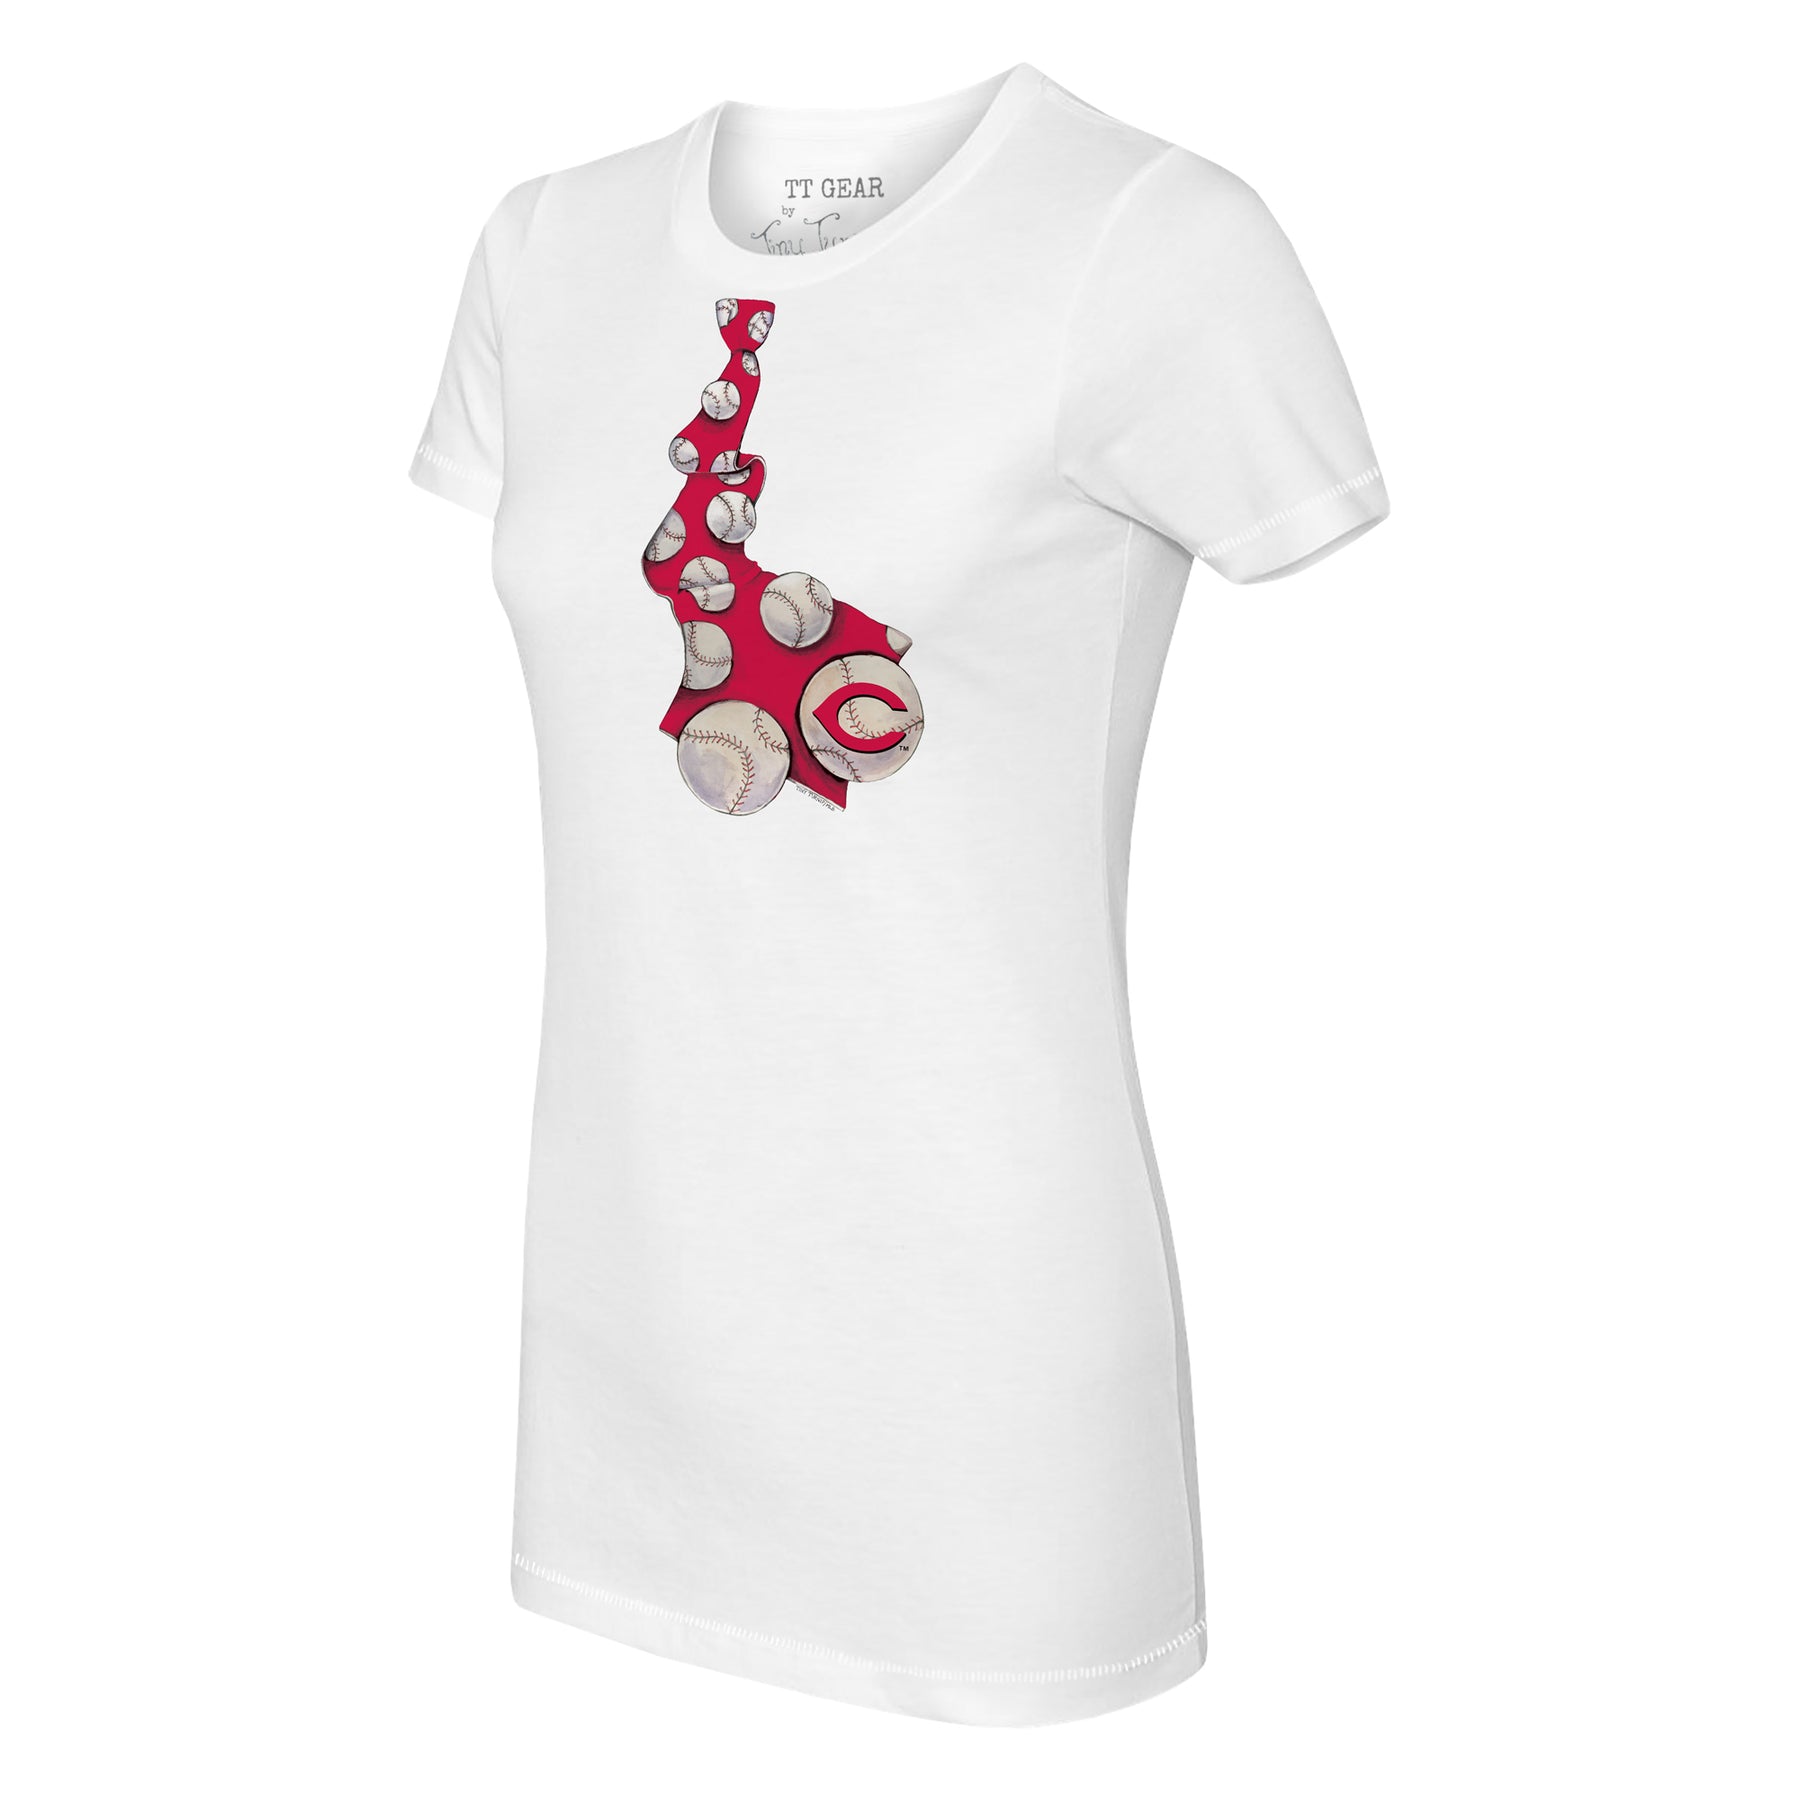 Tiny Turnip Cincinnati Reds Baseball Tie Tee Shirt Women's XS / White